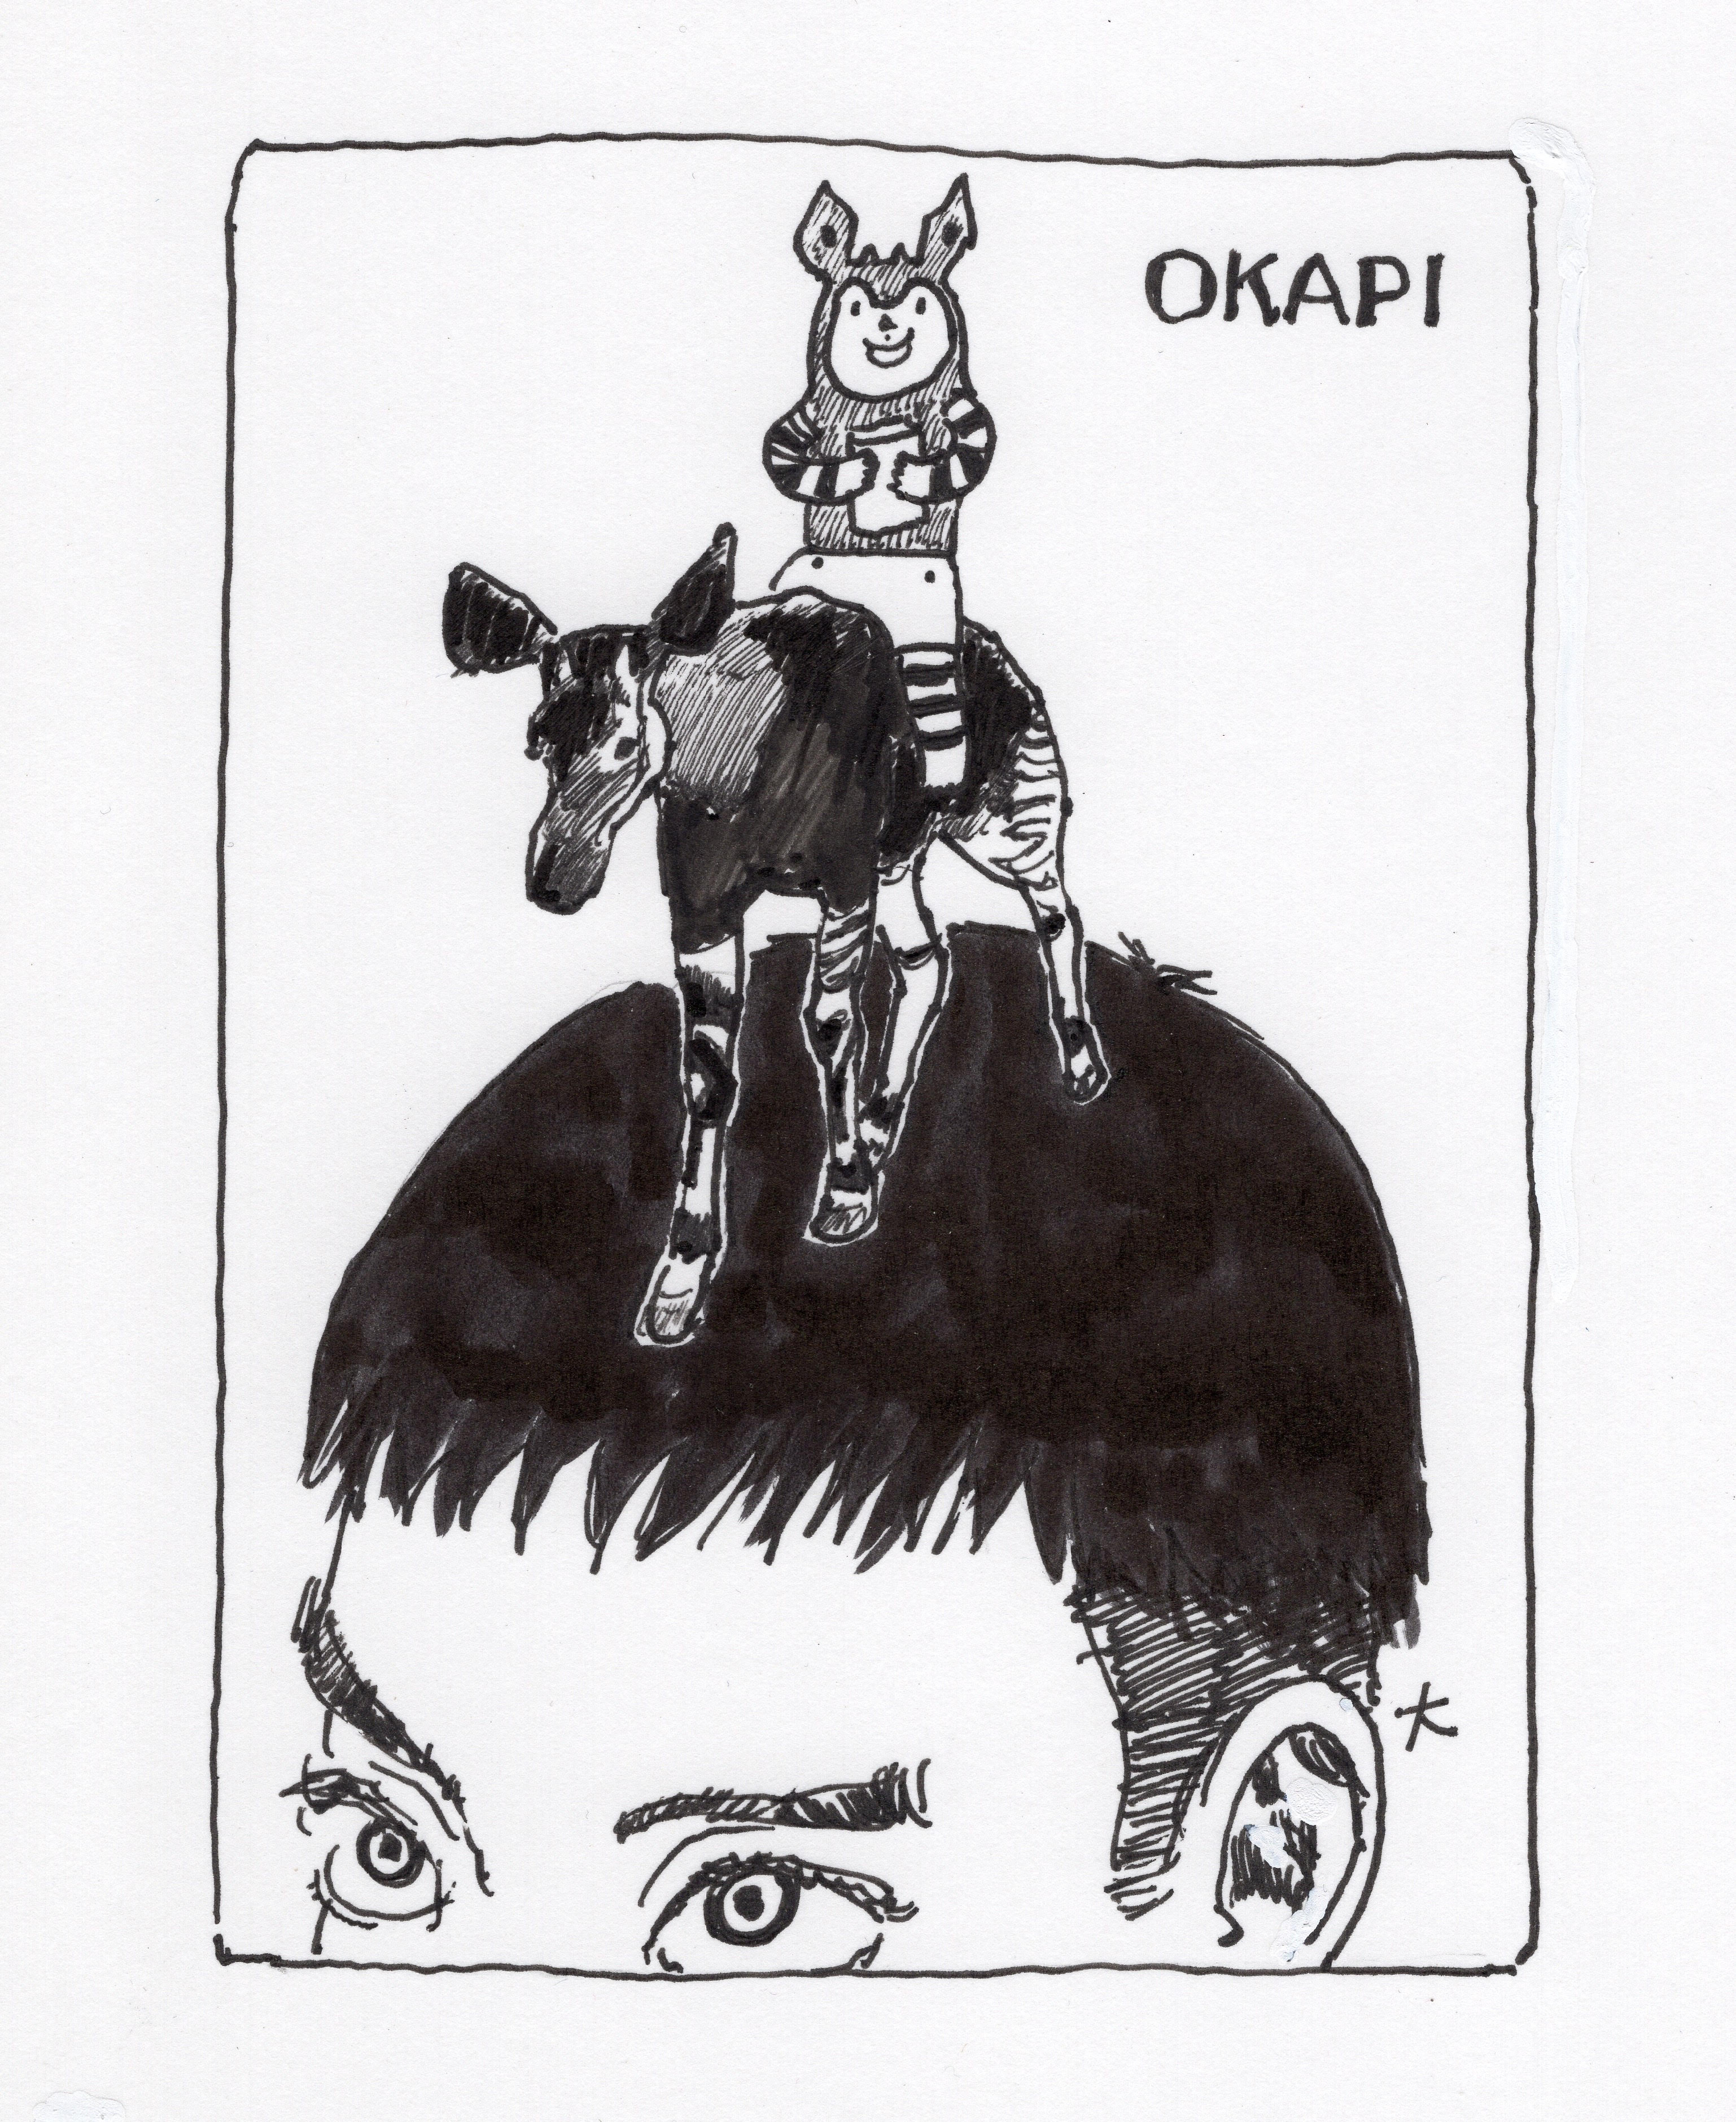 五十嵐大介親筆繪製的OKAPI